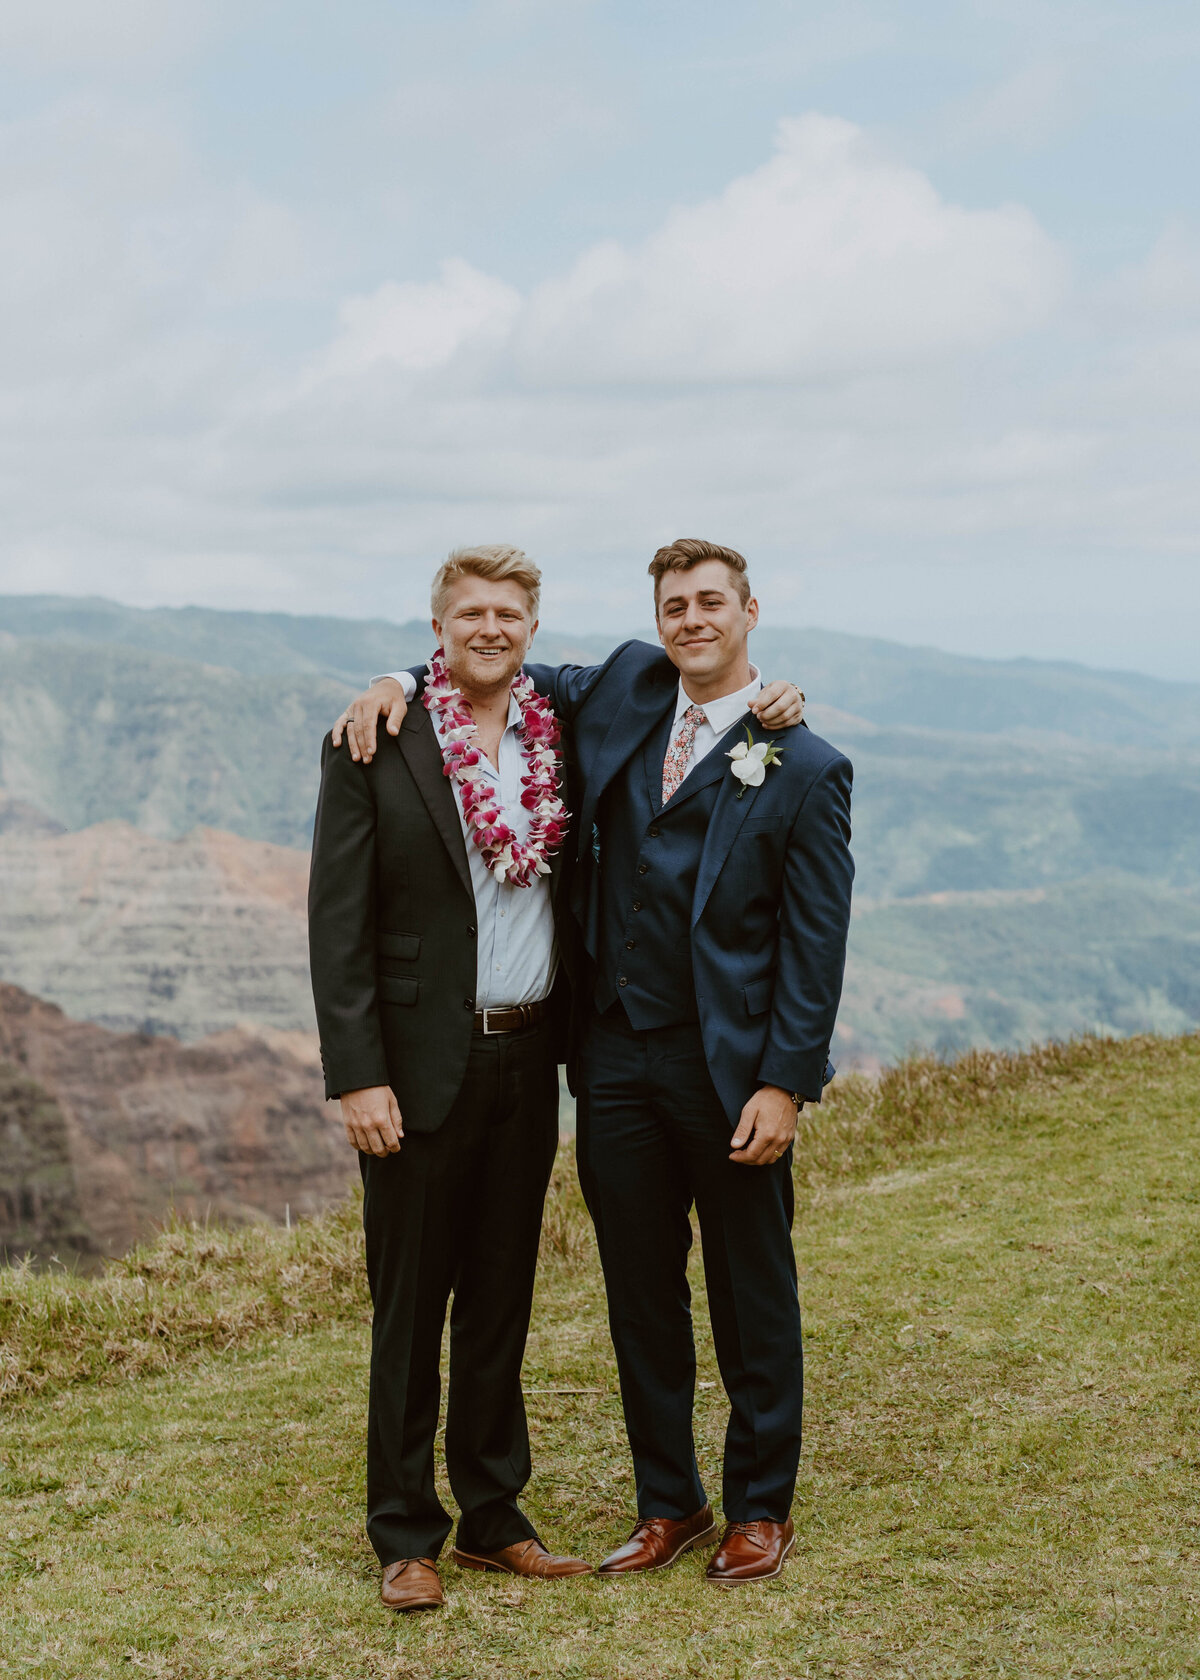 Nicole and Ethan get married at Waimea Canyon, Kauai.